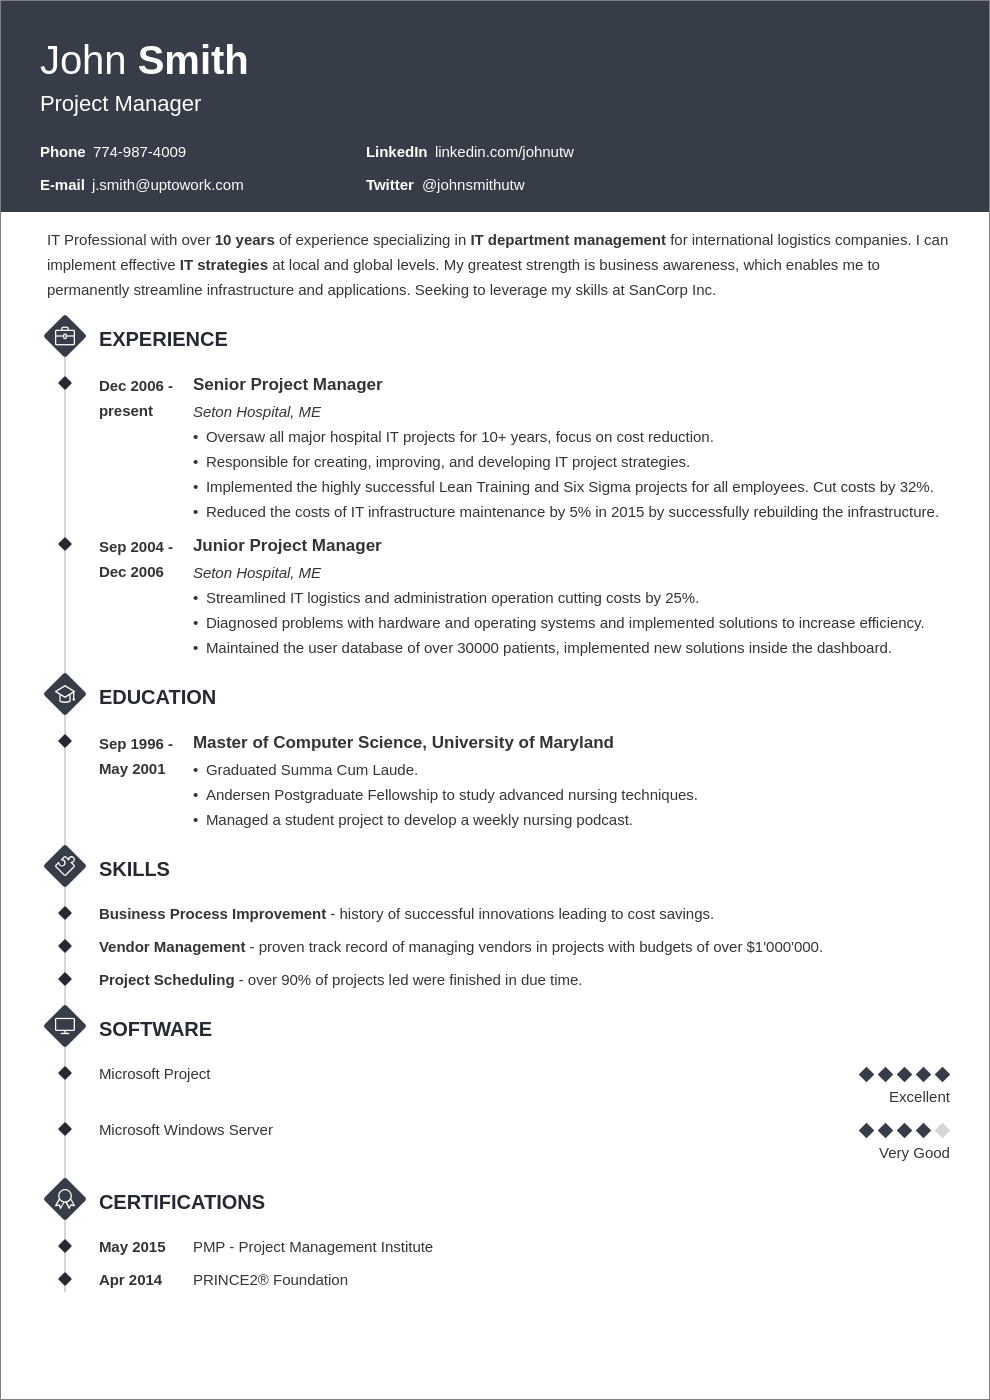 creative CV layout